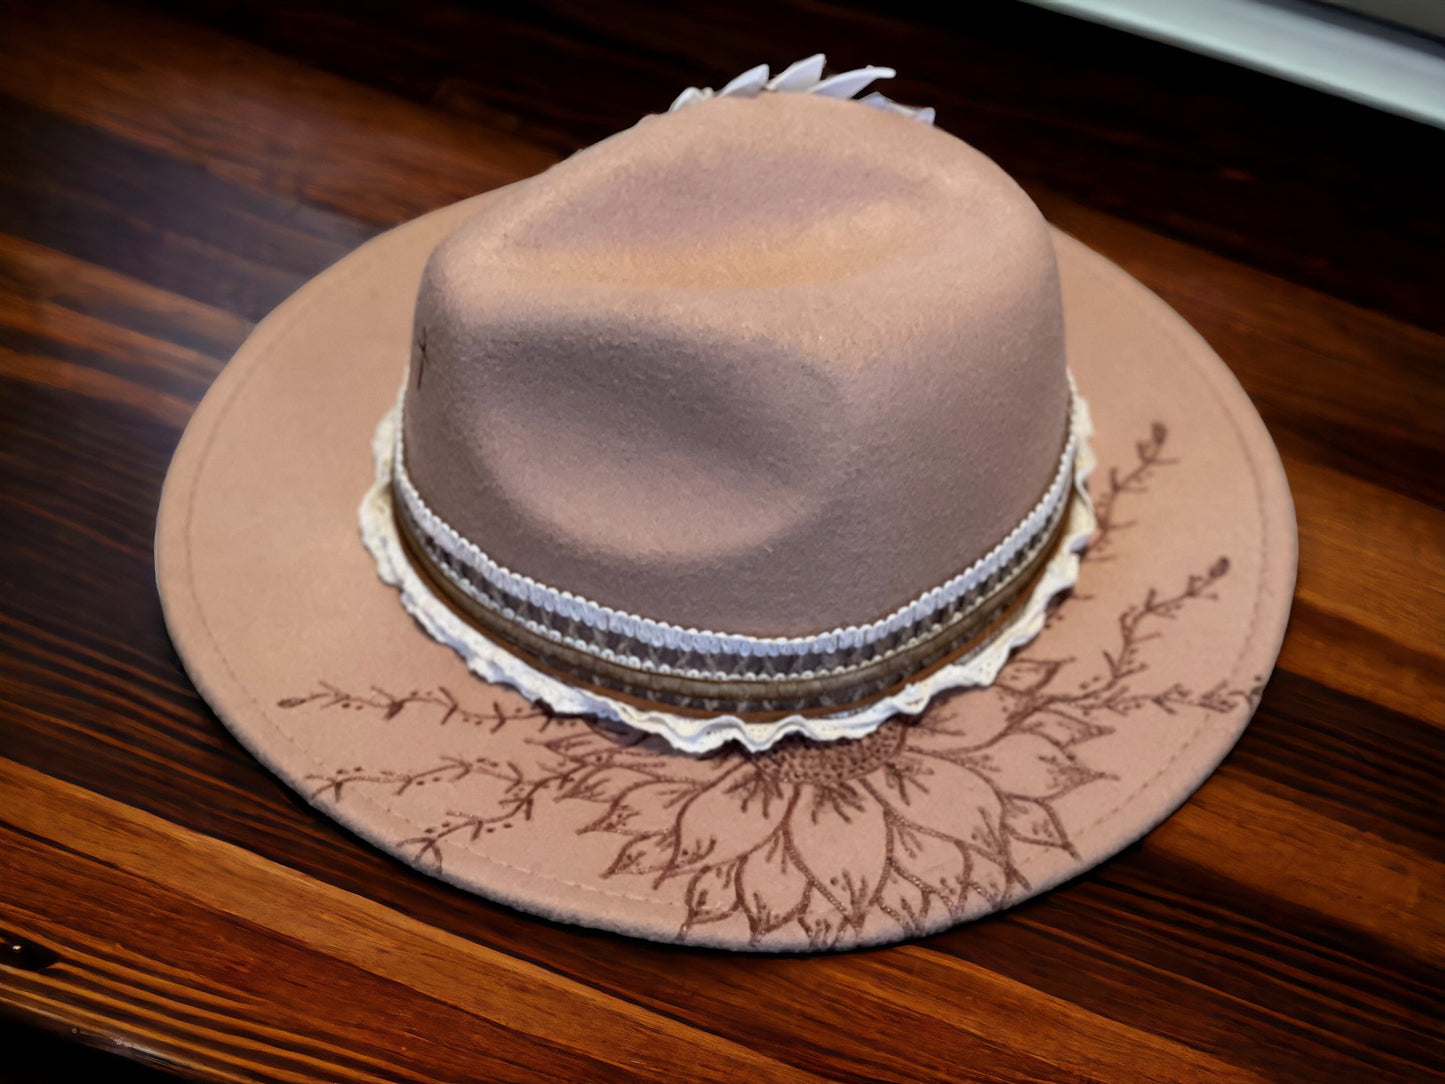 Custom Burned Fedora Style Hat